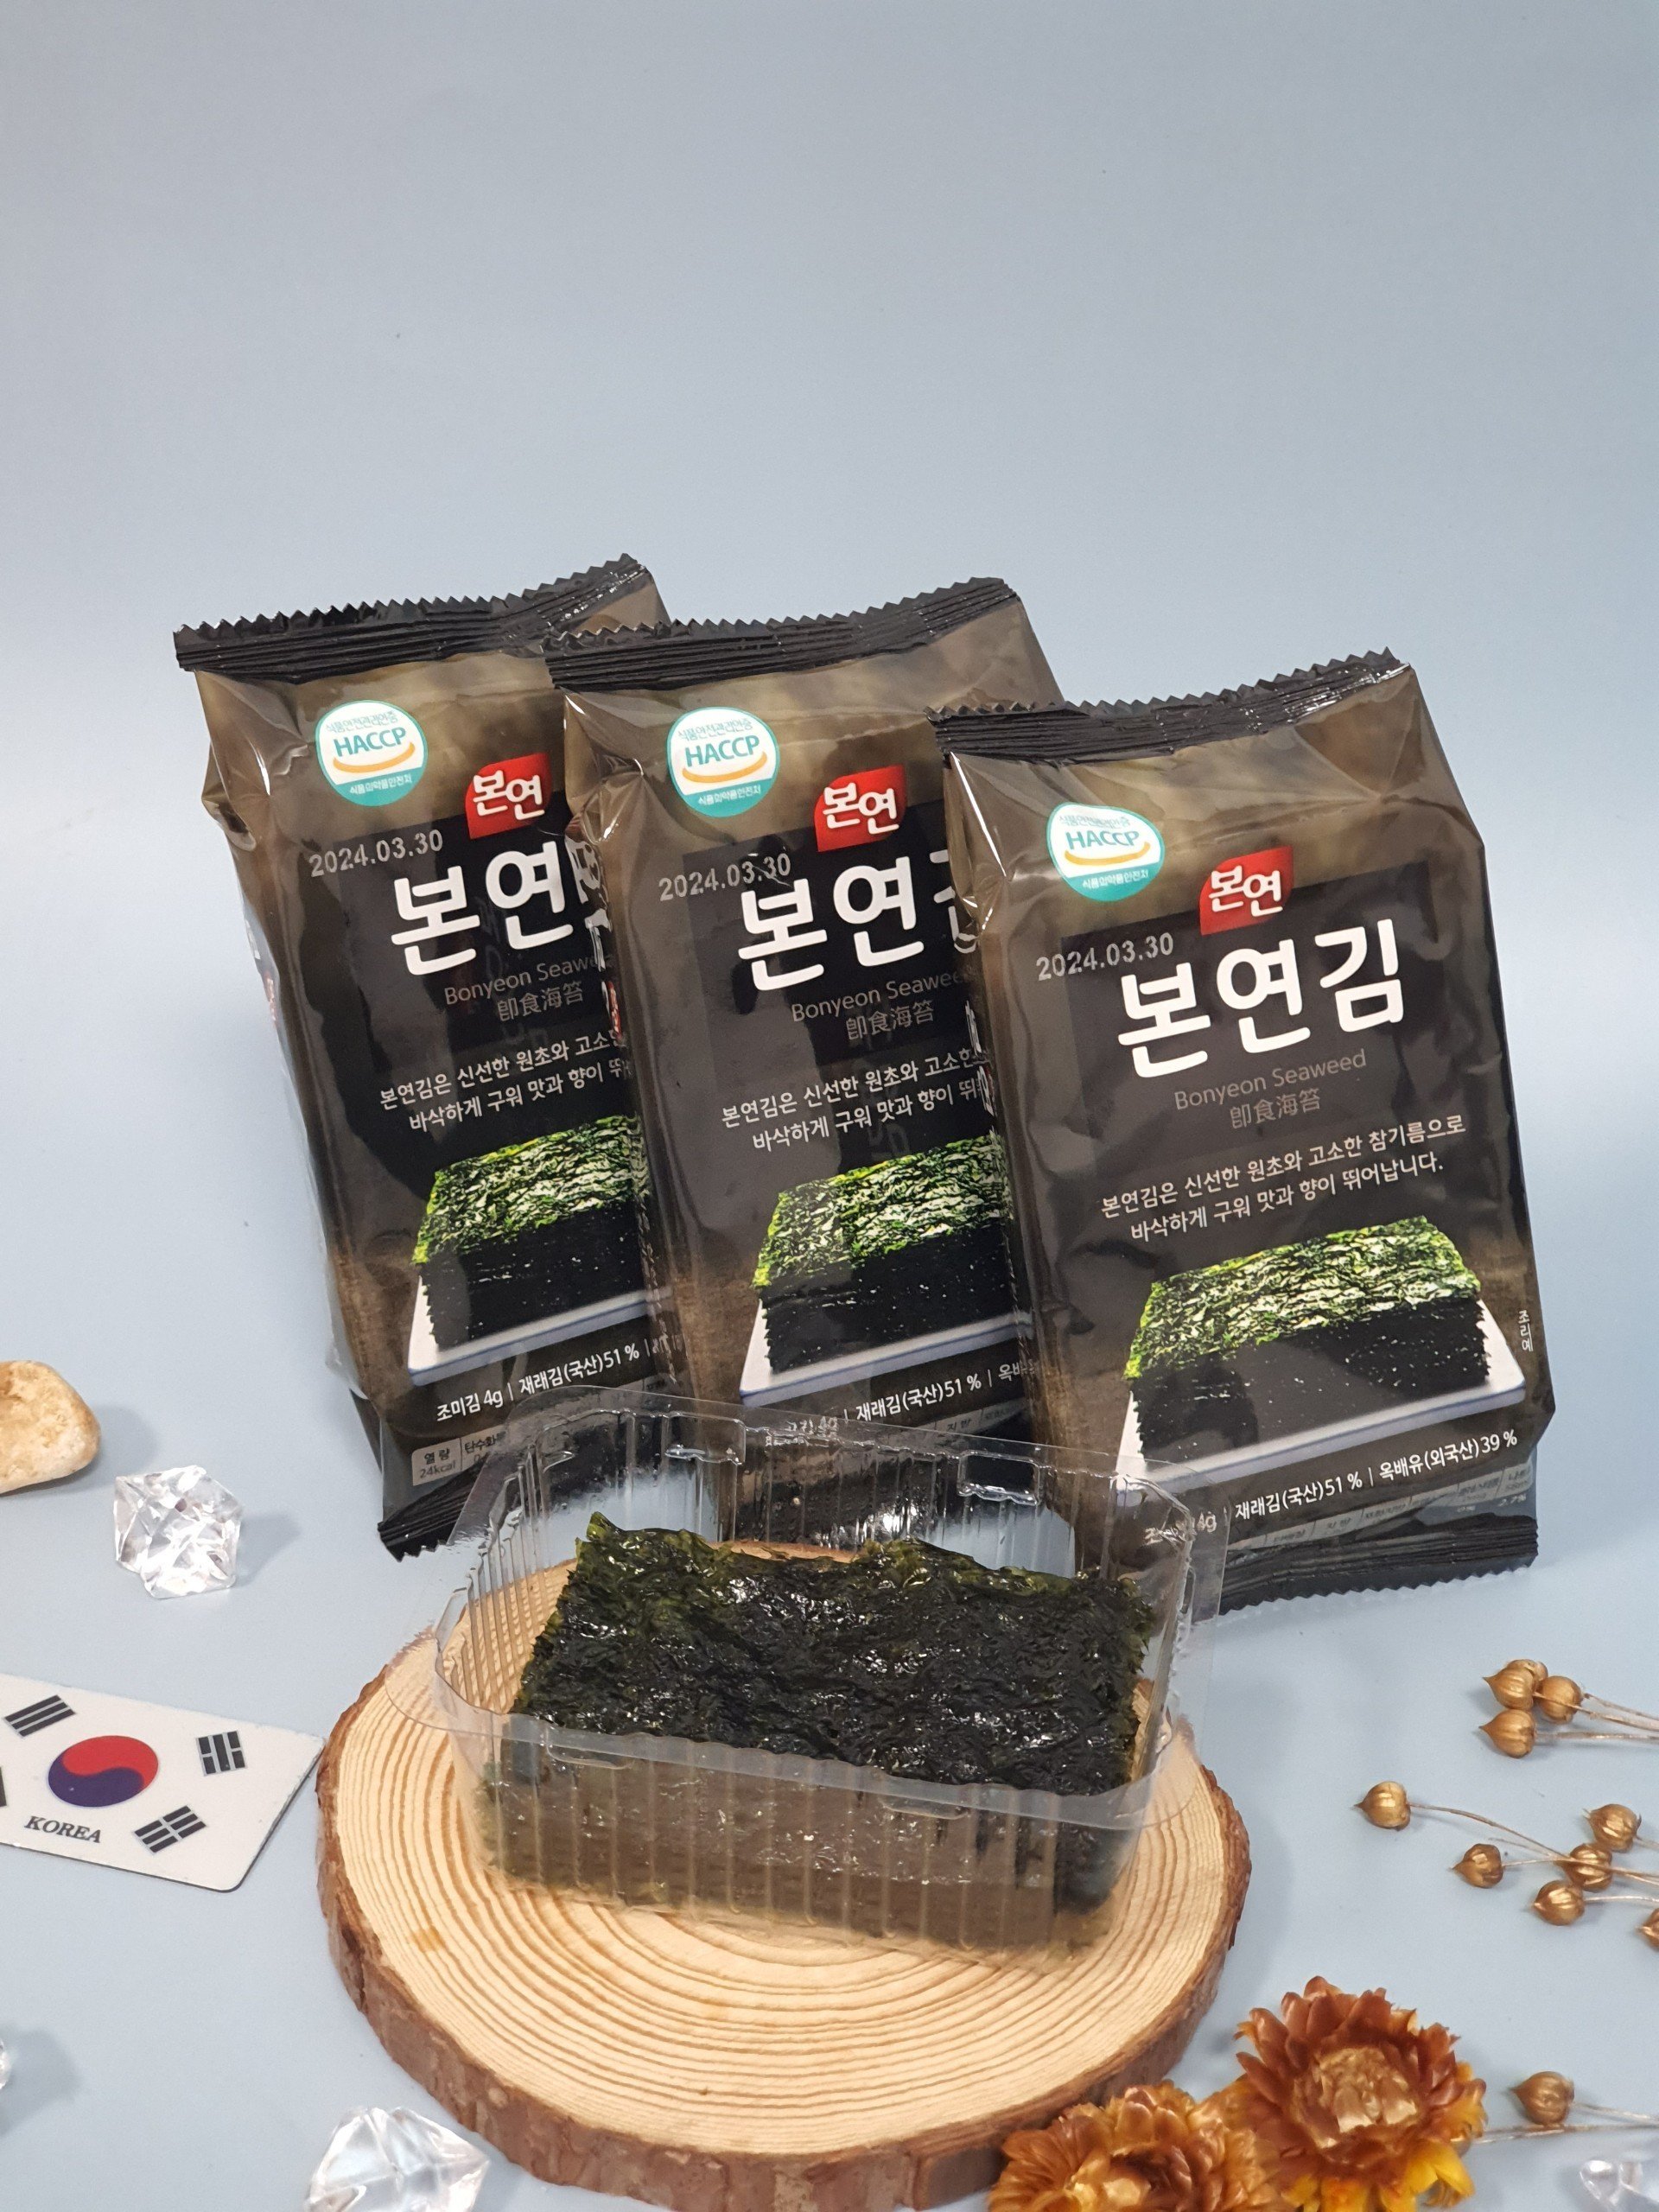 Rong biển ăn liền Hàn Quốc Bonyeon Sea Laver thenewlife0909